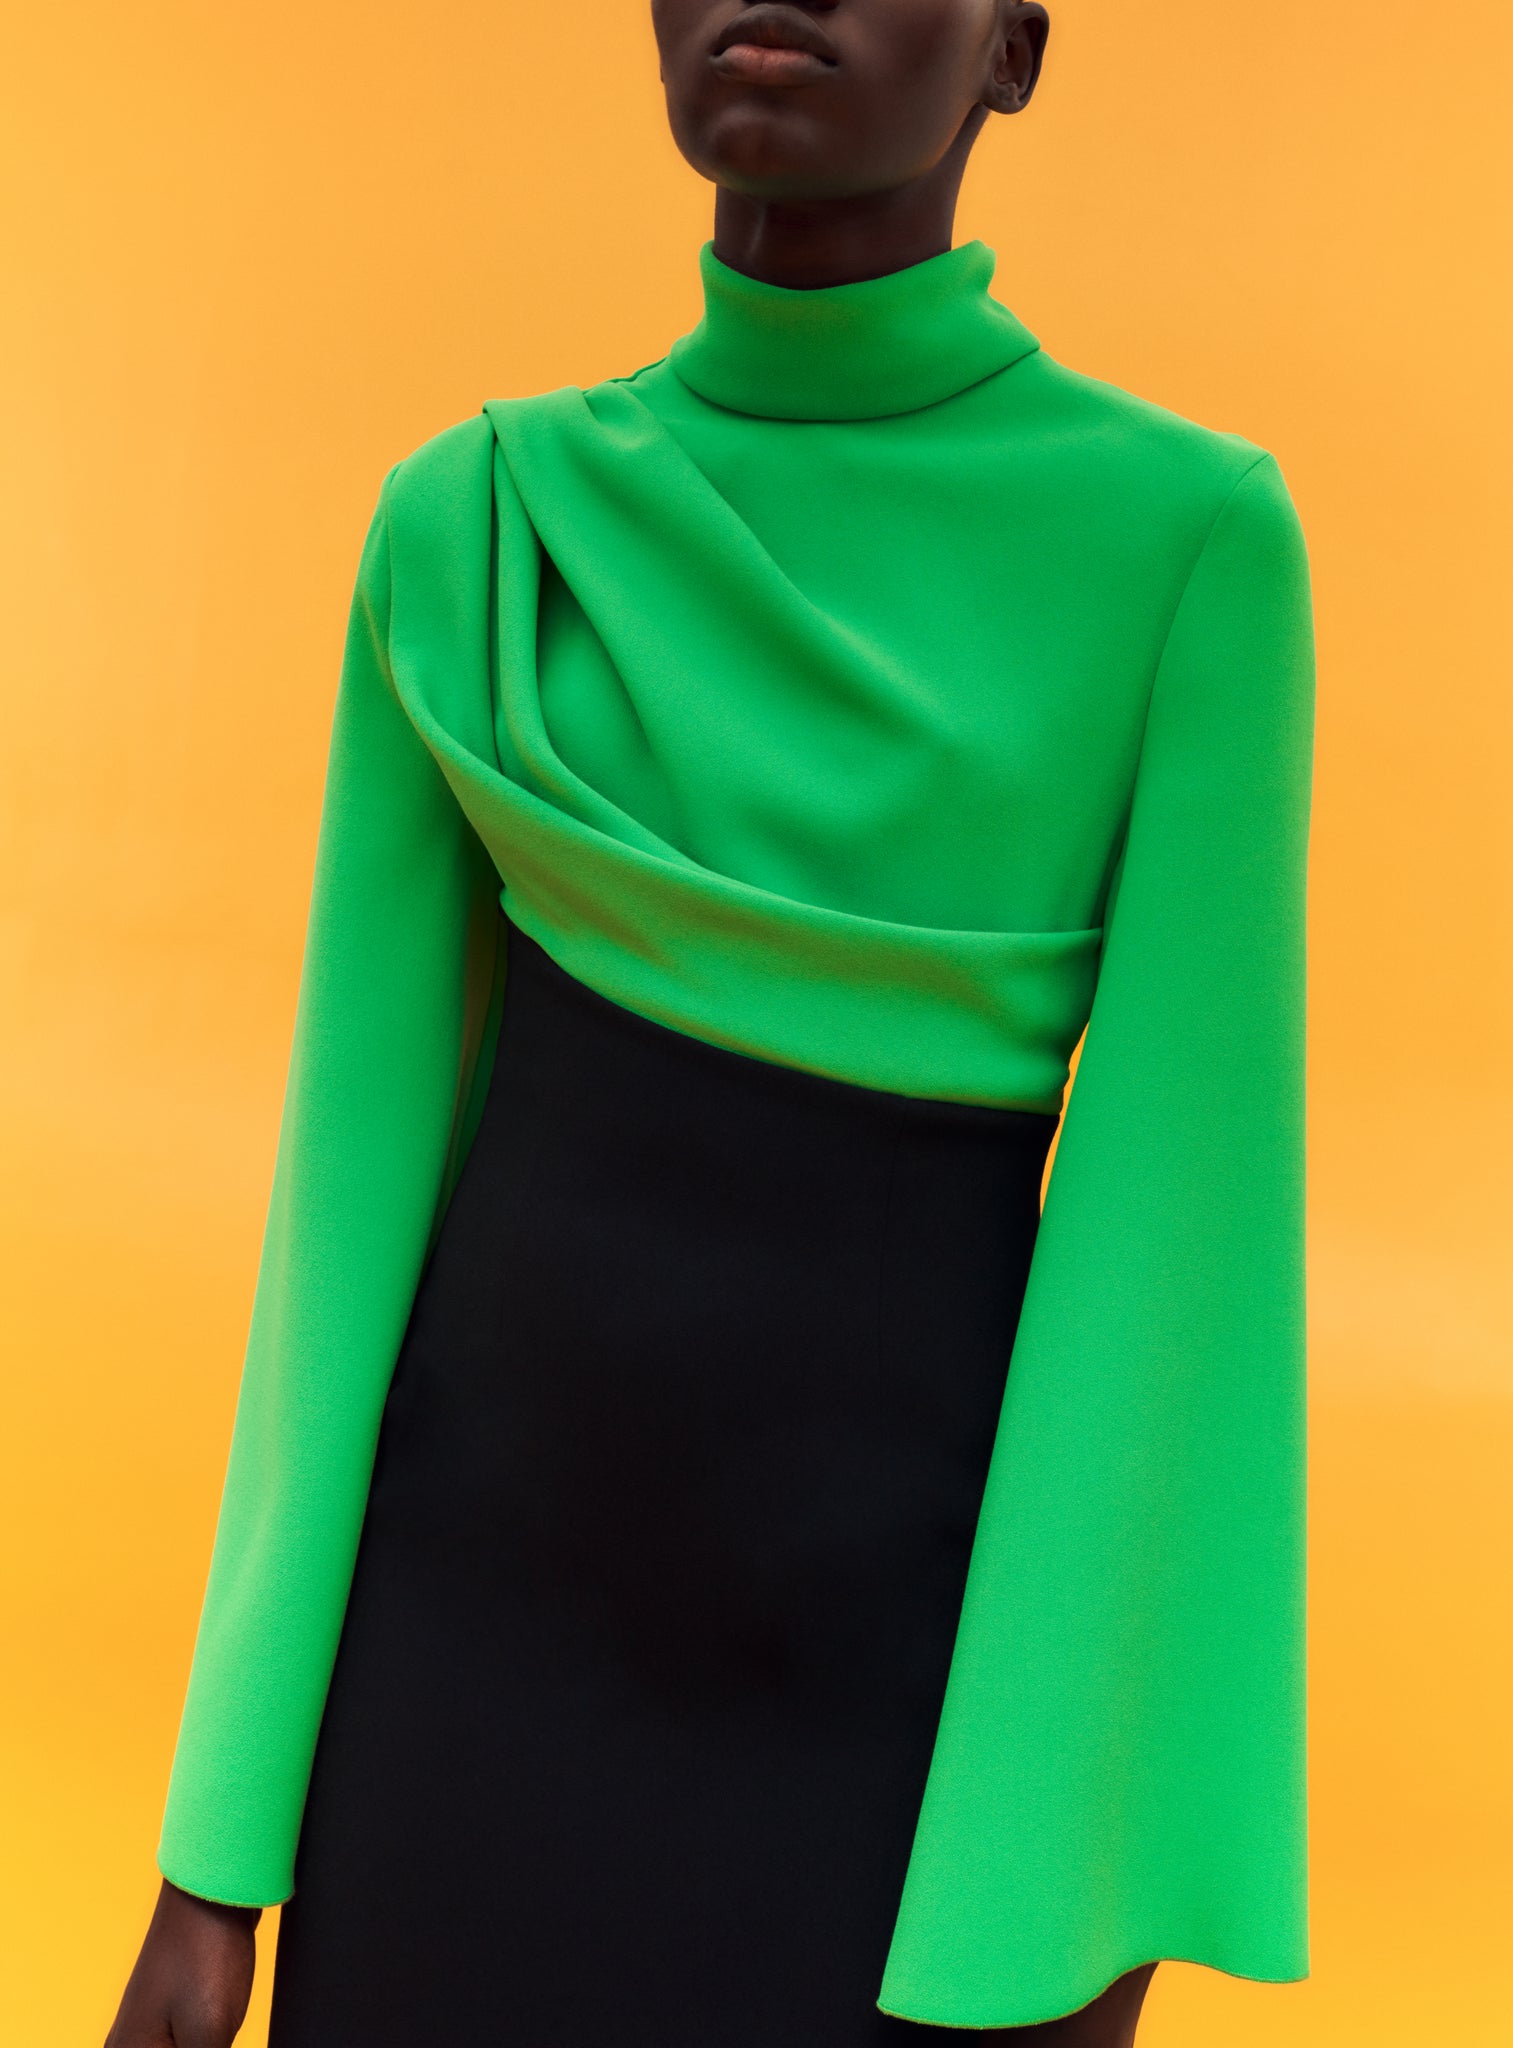 The Lia Maxi Dress in Bright Green & Black